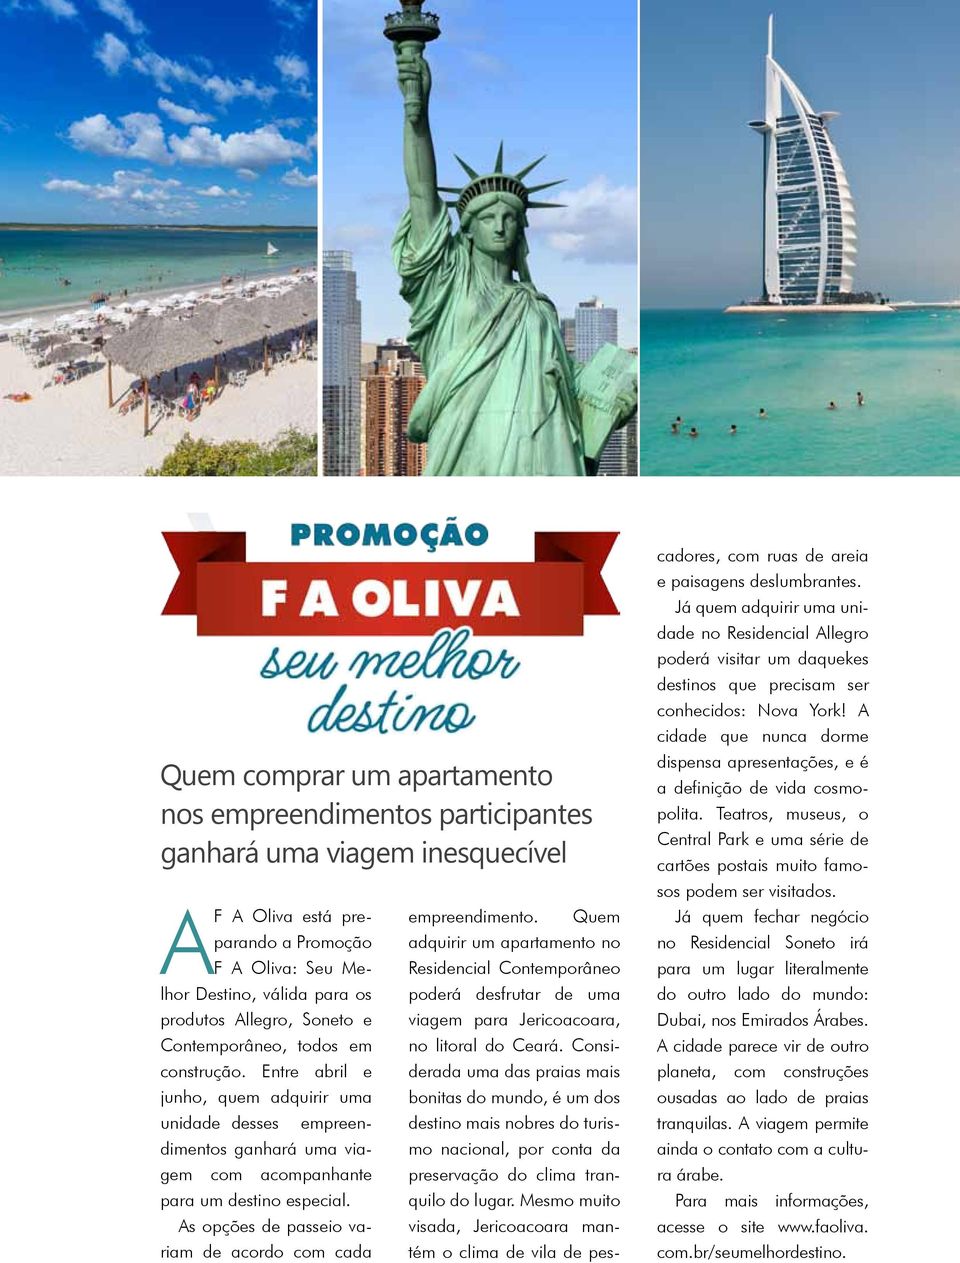 As opções de passeio variam de acordo com cada empreendimento. Quem adquirir um apartamento no Residencial Contemporâneo poderá desfrutar de uma viagem para Jericoacoara, no litoral do Ceará.